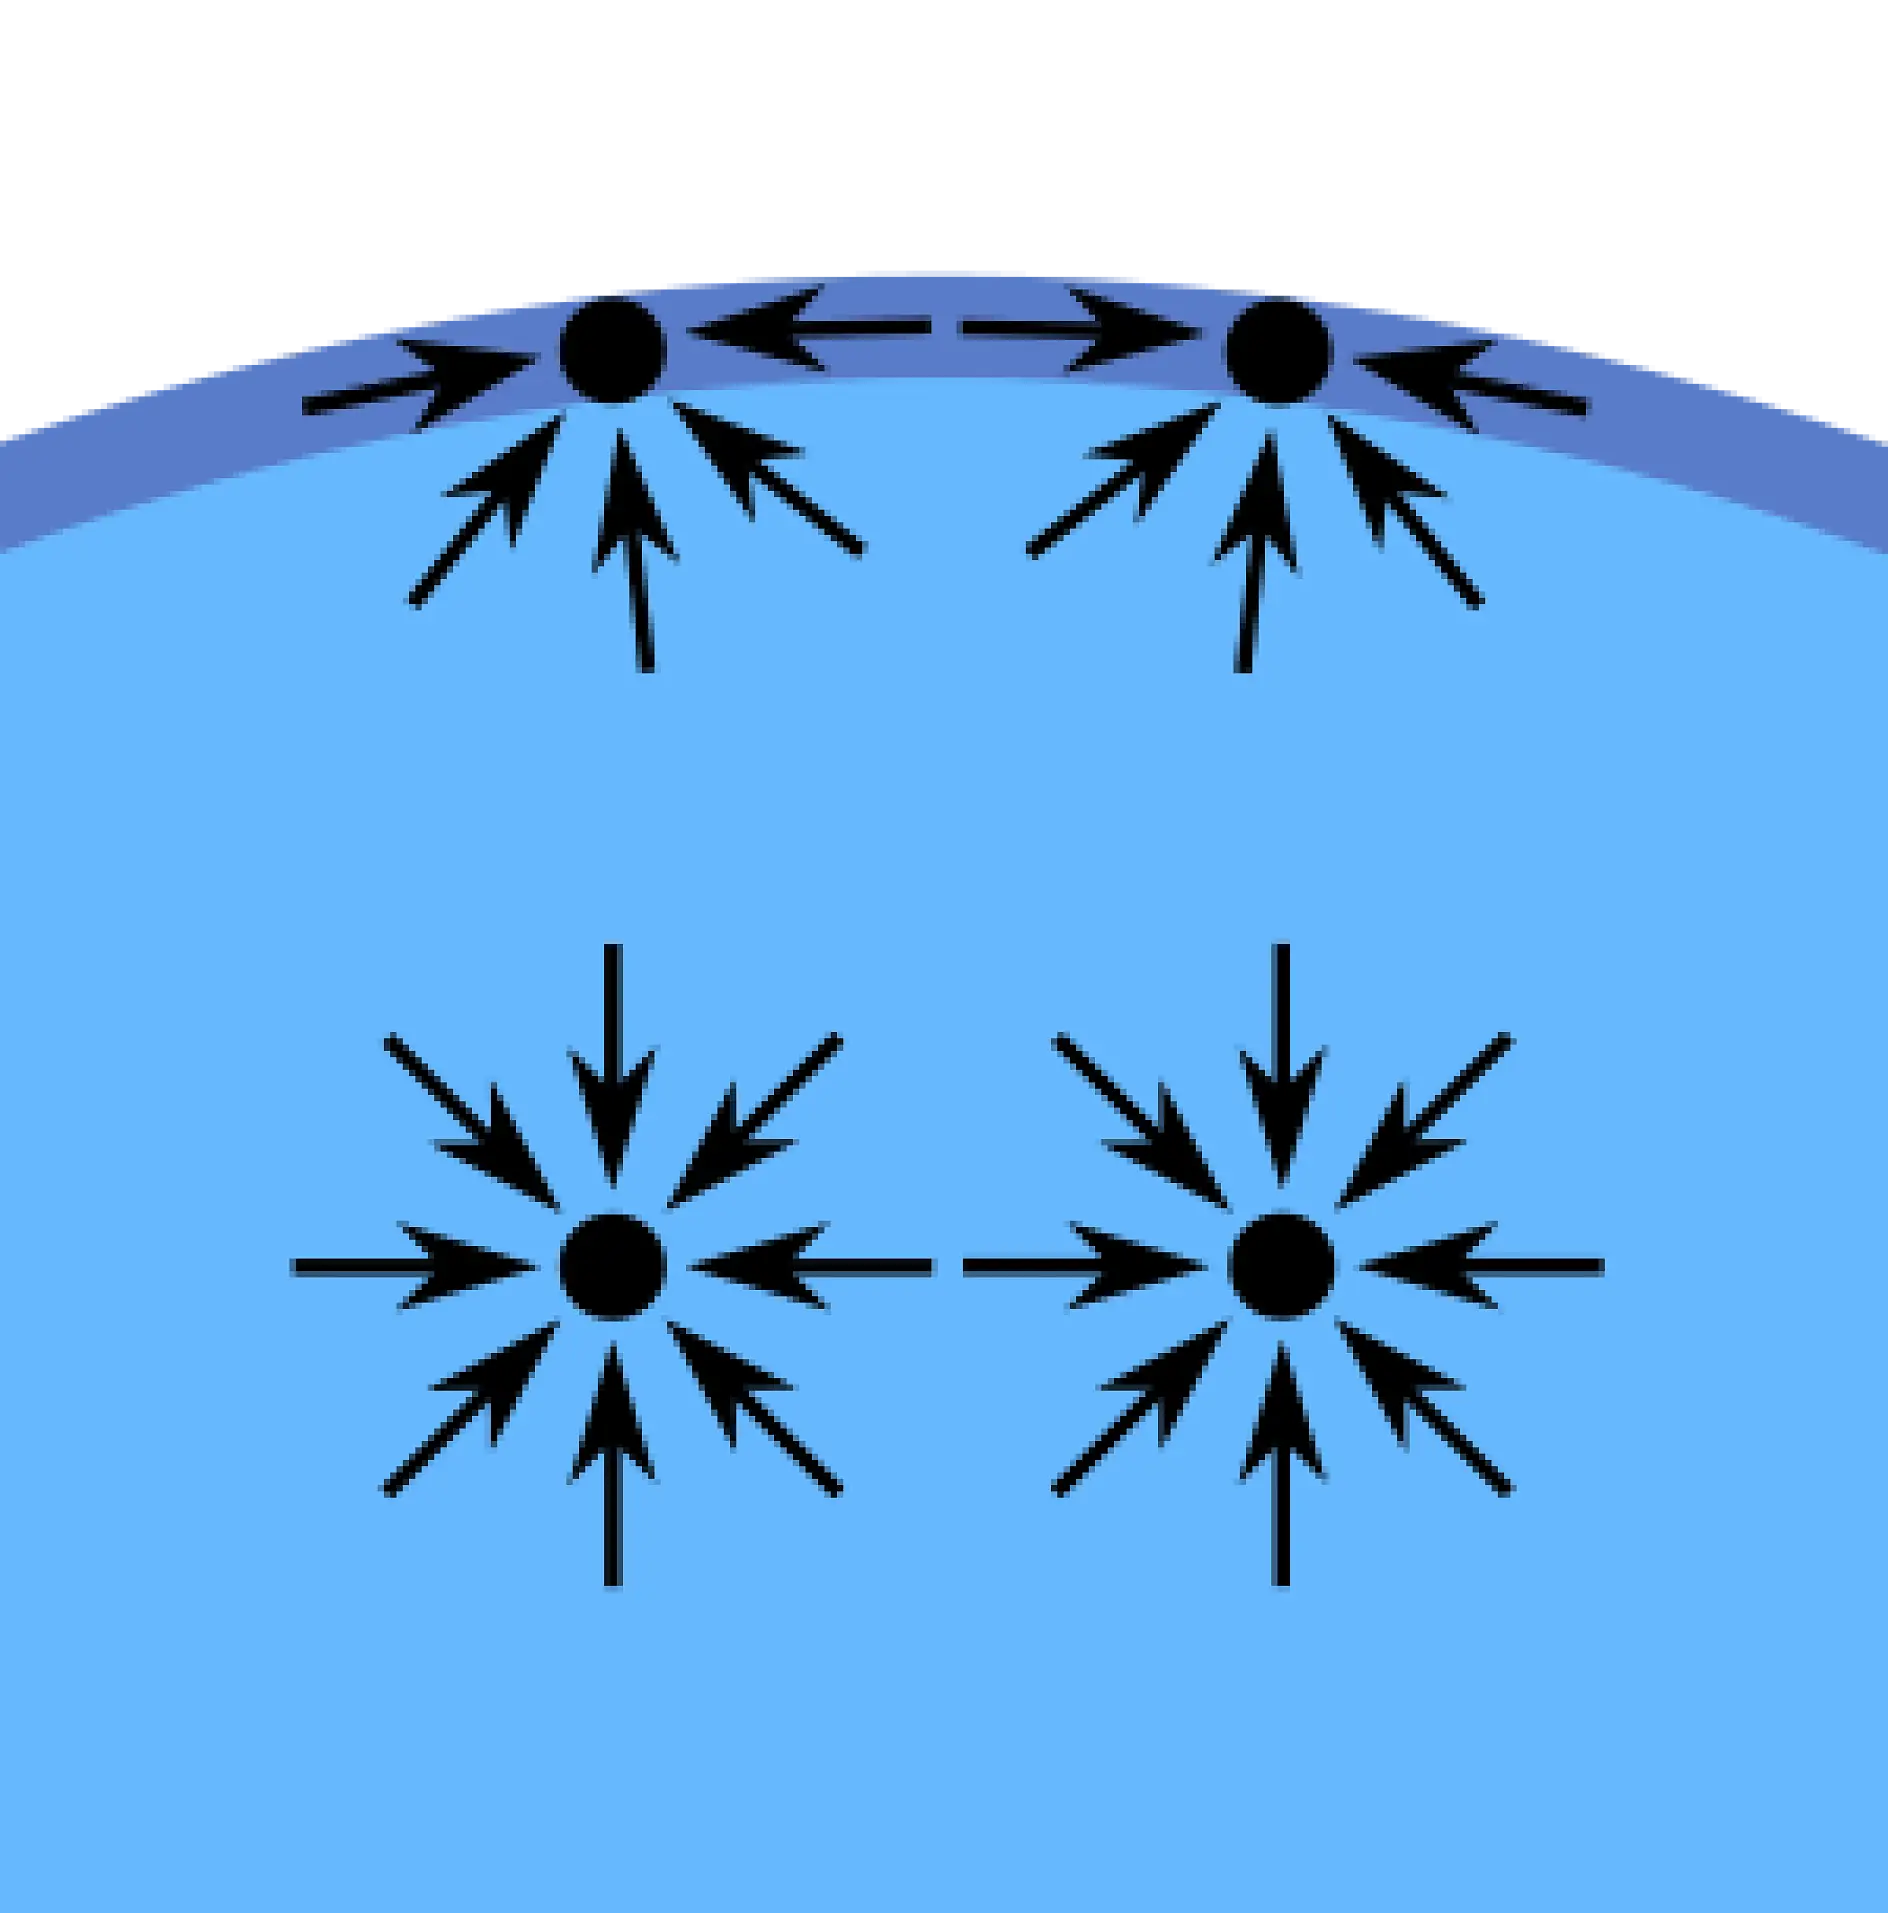 Kohæsionskræfterne - dermed menes den (indre) tiltrækning - mellem flydende molekyler skaber fænomenet, der kaldes ”overfladespænding”. Molekylerne på overfladen af et glas med eksempelvis vand har ikke andre vandmolekyler på alle sider af dem. Så de tiltrækkes til indersiden af vandet, de hænger kraftigere sammen med vandmolekyler ved siden af og under dem. Denne tiltrækning er højere end den til luftmolekylerne over dem. Når alt kommer til alt, skaber denne indre kraft den overflade, der separerer vand og luft.